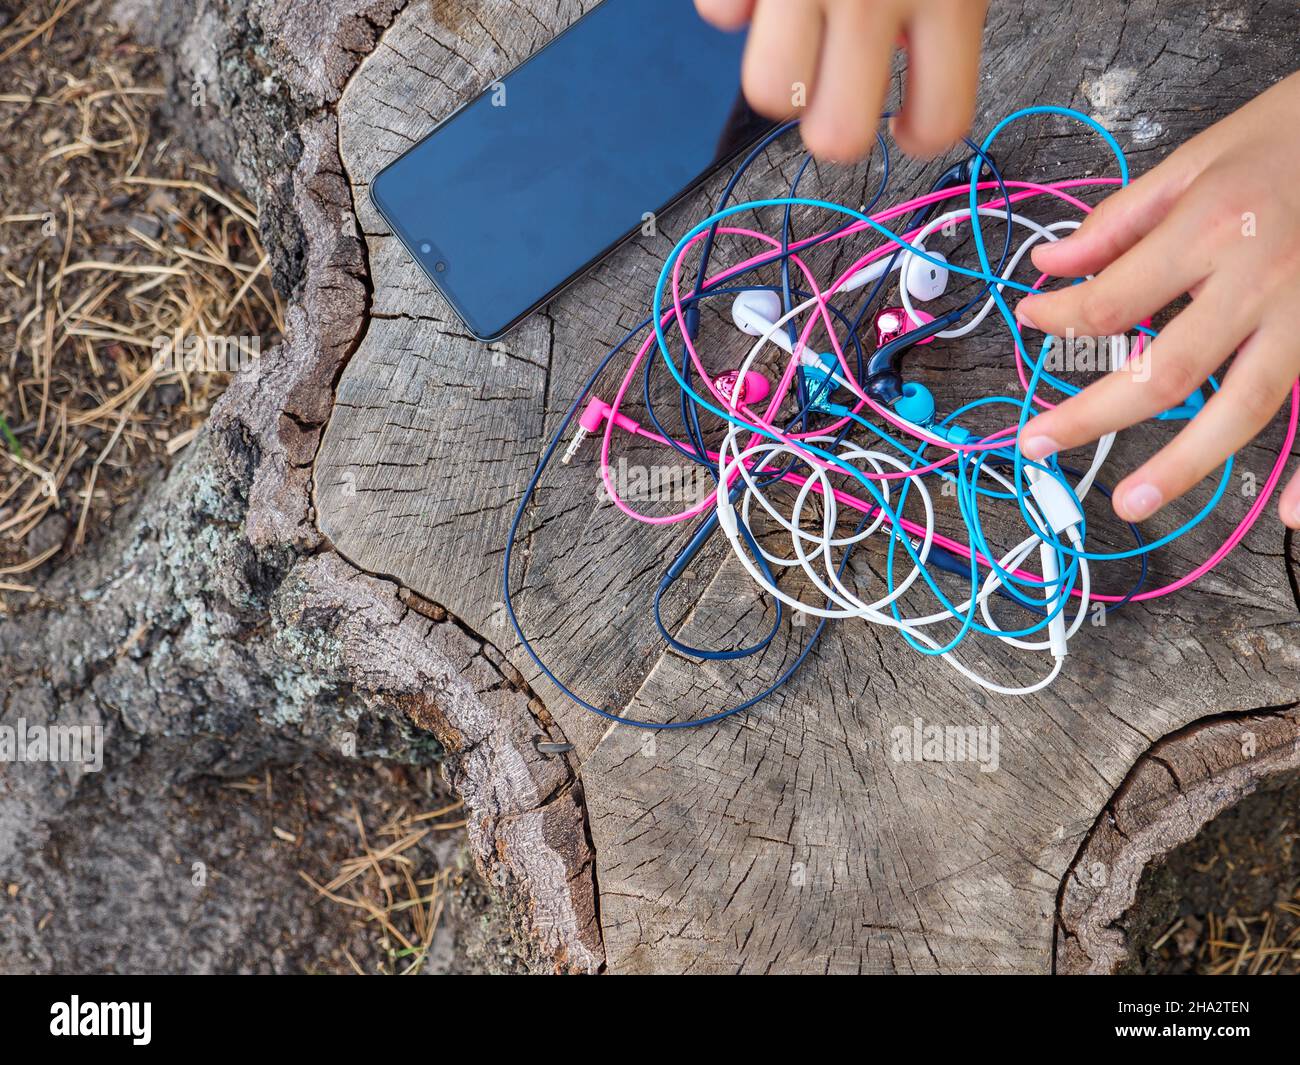 Un telefono e una mano che reggono un nodo di quattro paia di auricolari in-ear colorati rosa, blu, bianco e nero aggrovigliati in un caotico problema caotico. Foto Stock